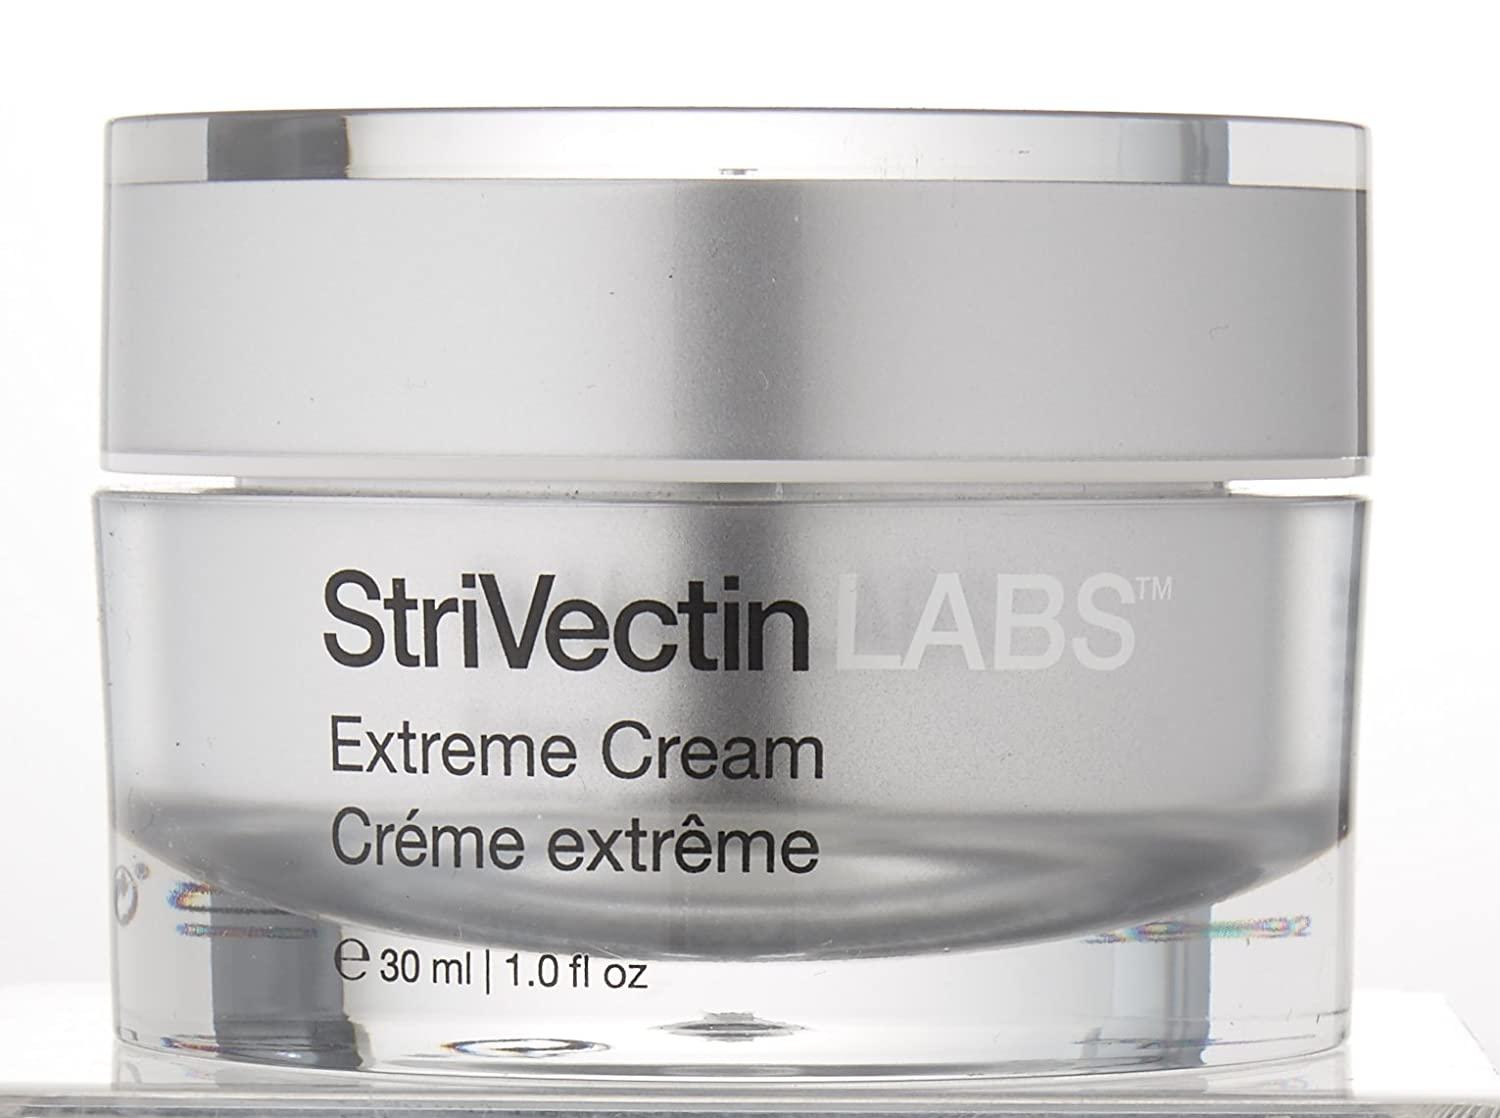 StriVectinLabs Extreme Cream